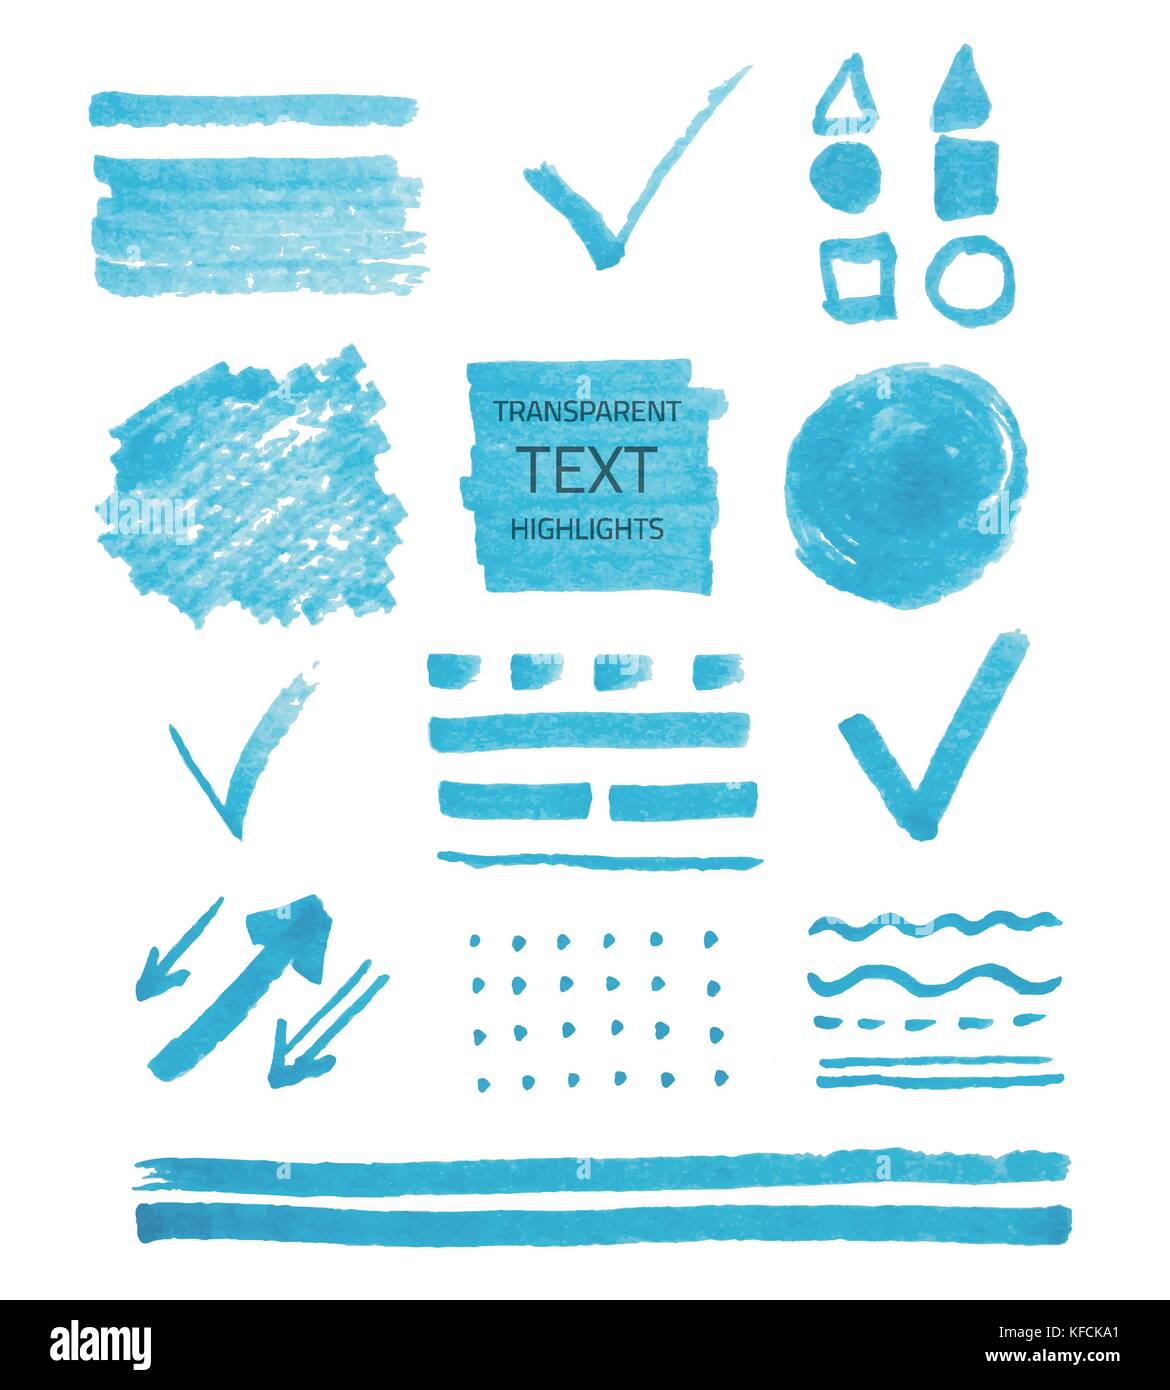 Vektor einrichten von transparenten Textmarker markiert, blaue Farbe isoliert auf weißem Stock Vektor